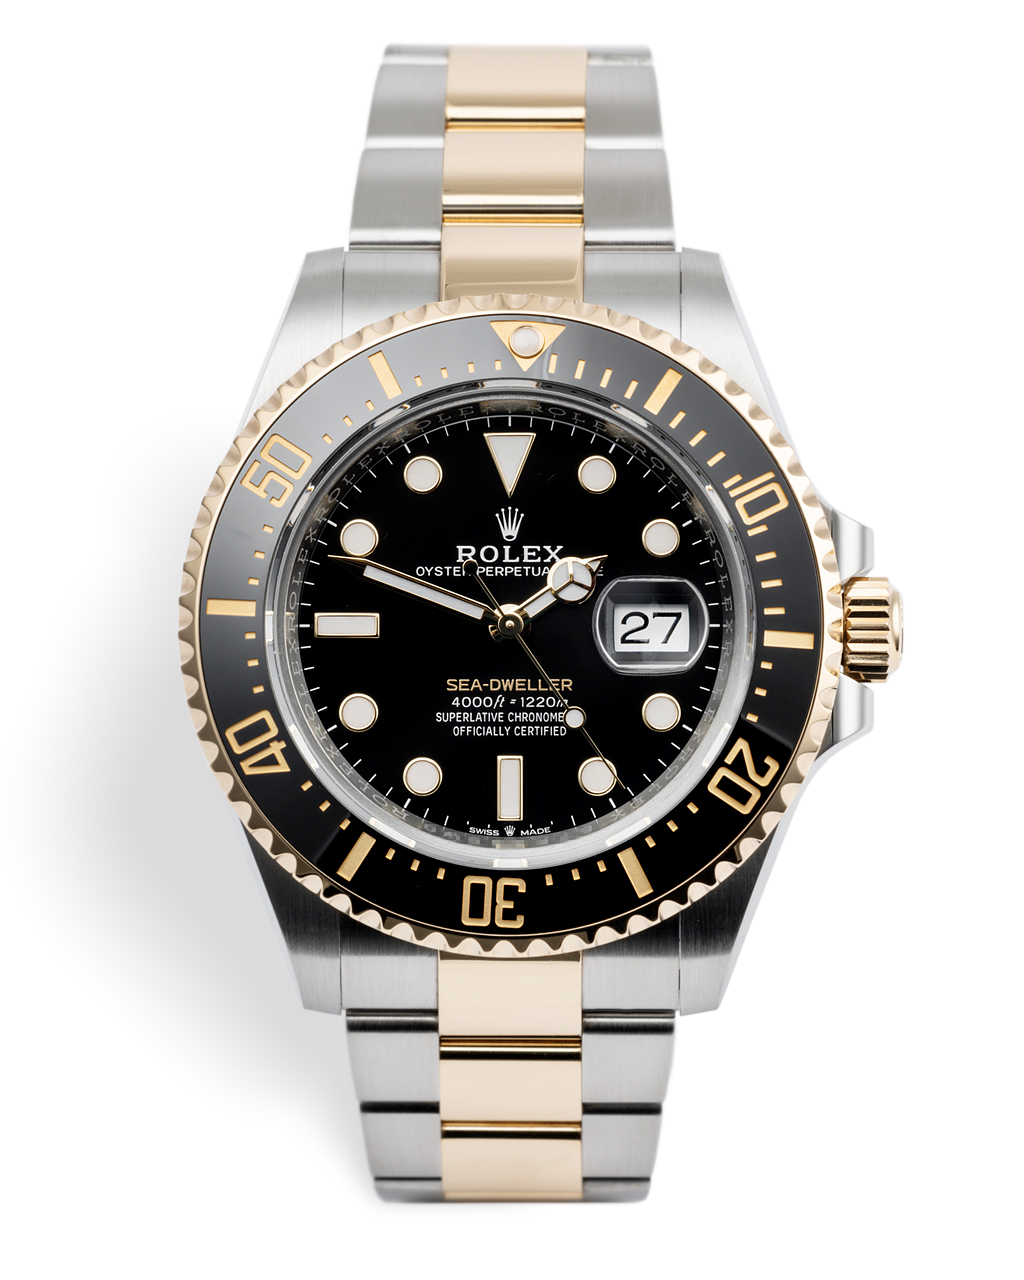 Rolex Sea-Dweller Watches | ref 126603 | Rolex Warranty to 2024 | The ...